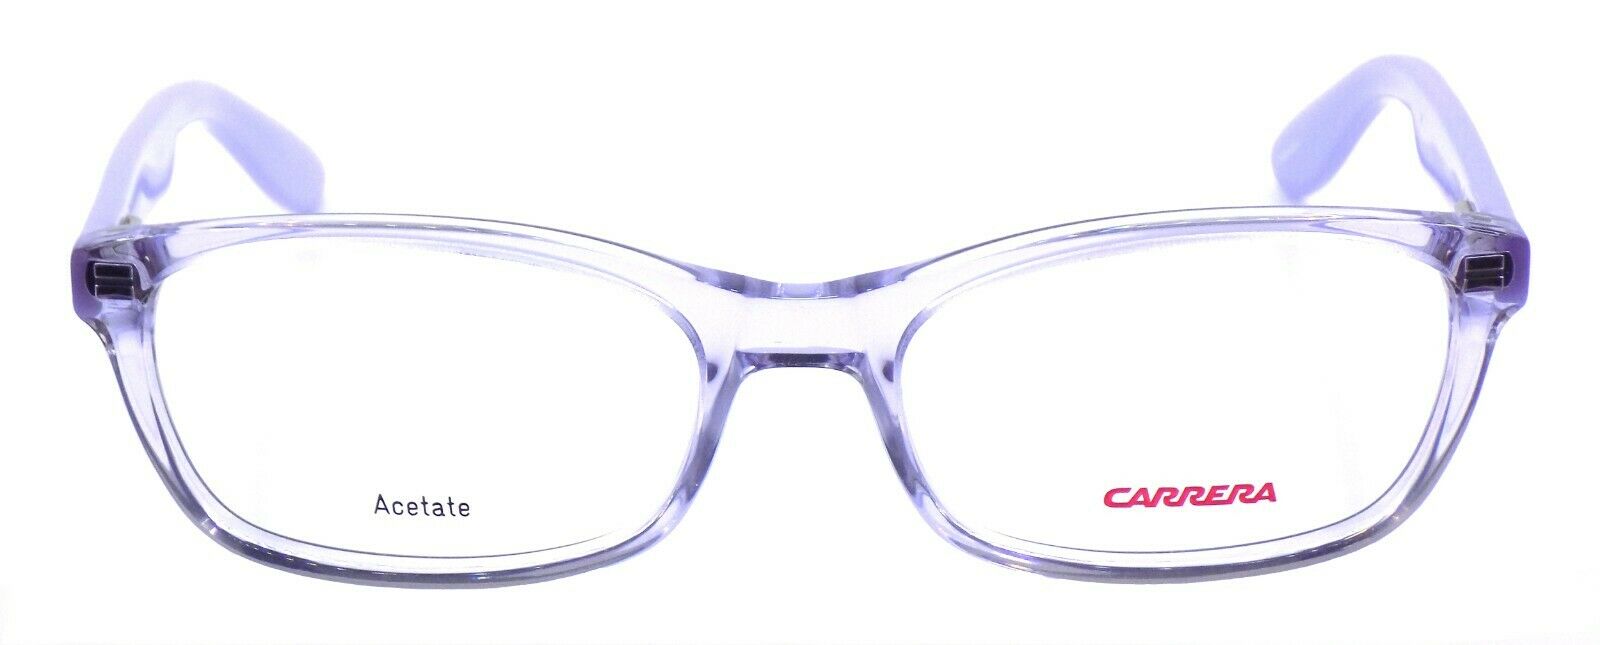 2-Carrera Carrerino 56 TSV Kids' Eyeglasses Frames 48-16-125 Lilac + CASE-762753804327-IKSpecs